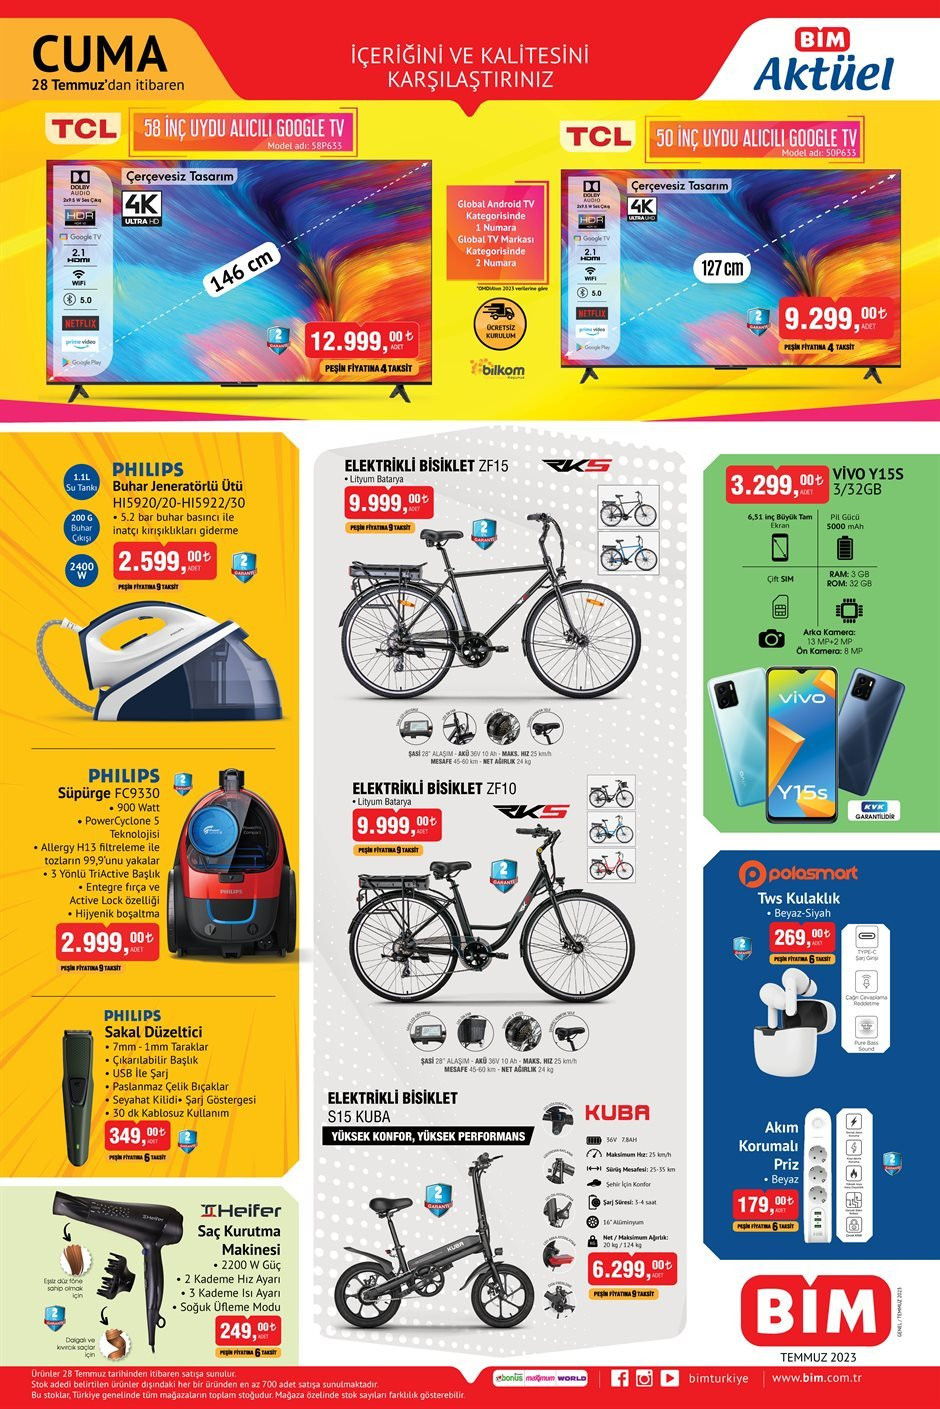 BİM haftanın indirim ürünlerini açıkladı 31 Temmuz aktüel ürünler kataloğu dikkat çekti Elektrikli Bisiklet 9,999 TL, Temizlik Seti 85,99 TL - Resim : 1